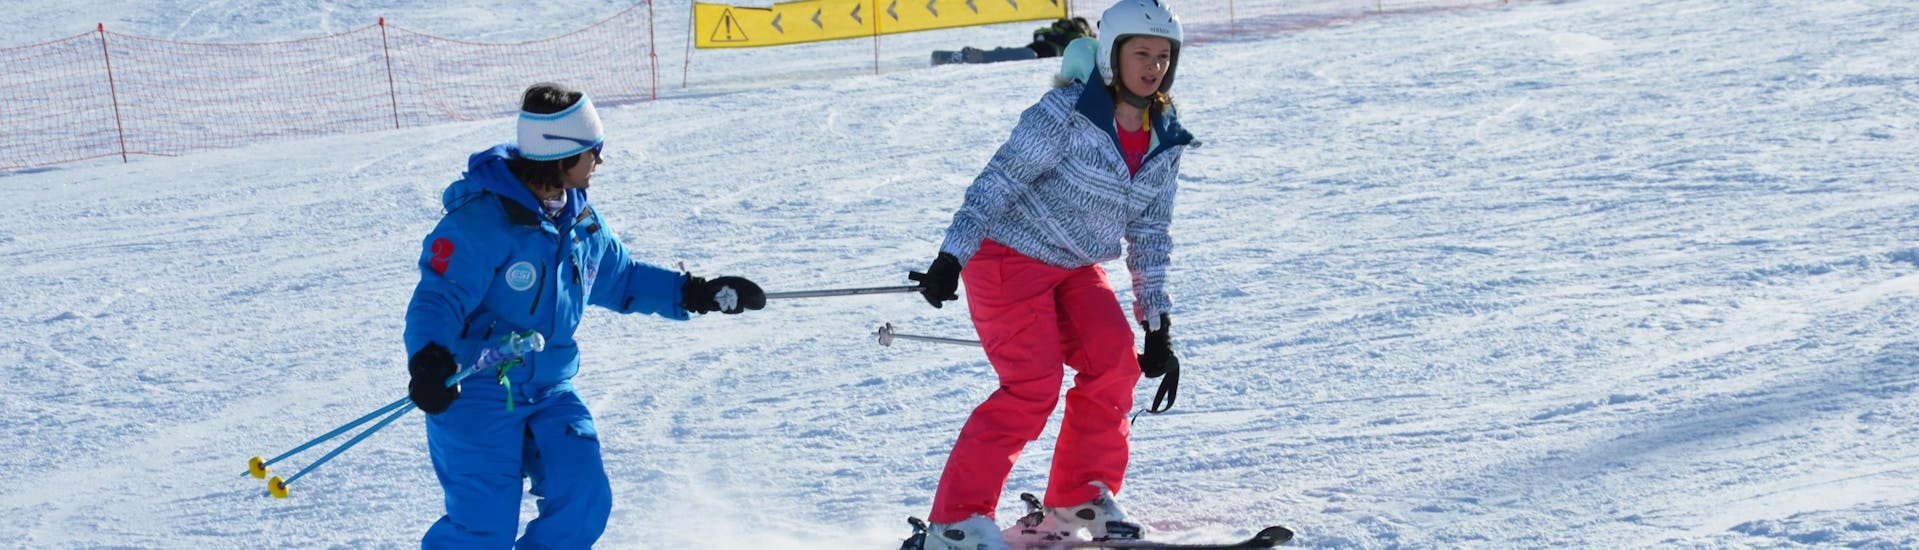 Un istruttore della Scuola Europea di Sci aiuta una sciatrice a muovere i primi passi durante una lezione privata di sci per adulti a Les Deux Alpes.